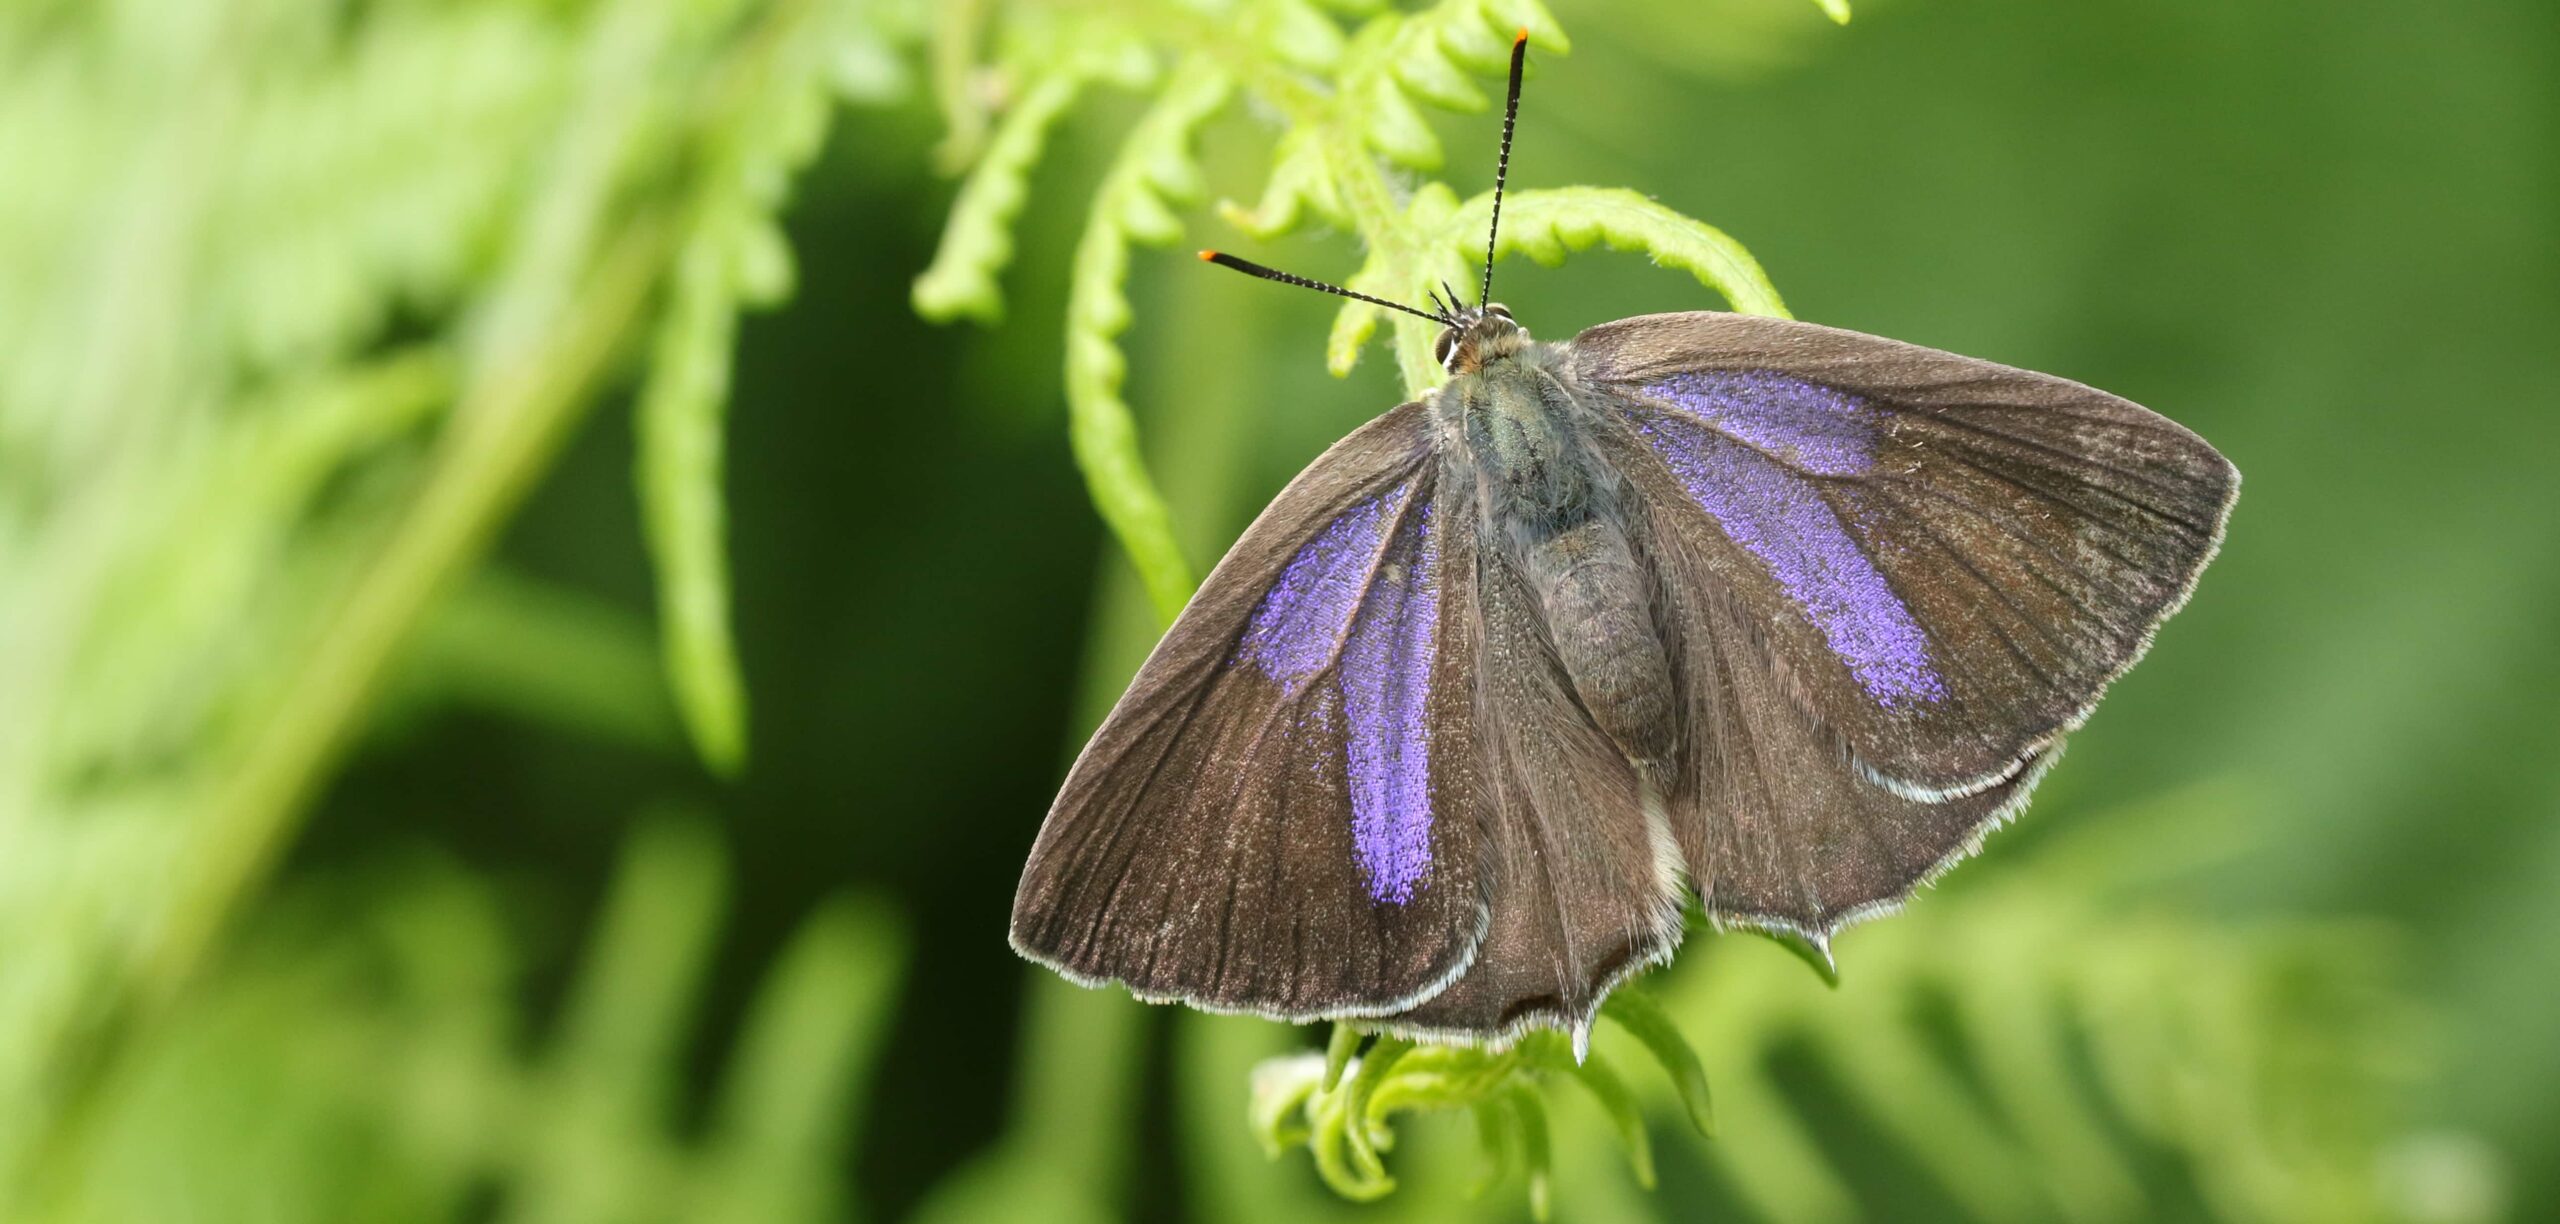 The Purple Hairstreak butterfly. Dark wings with streaks of purple.